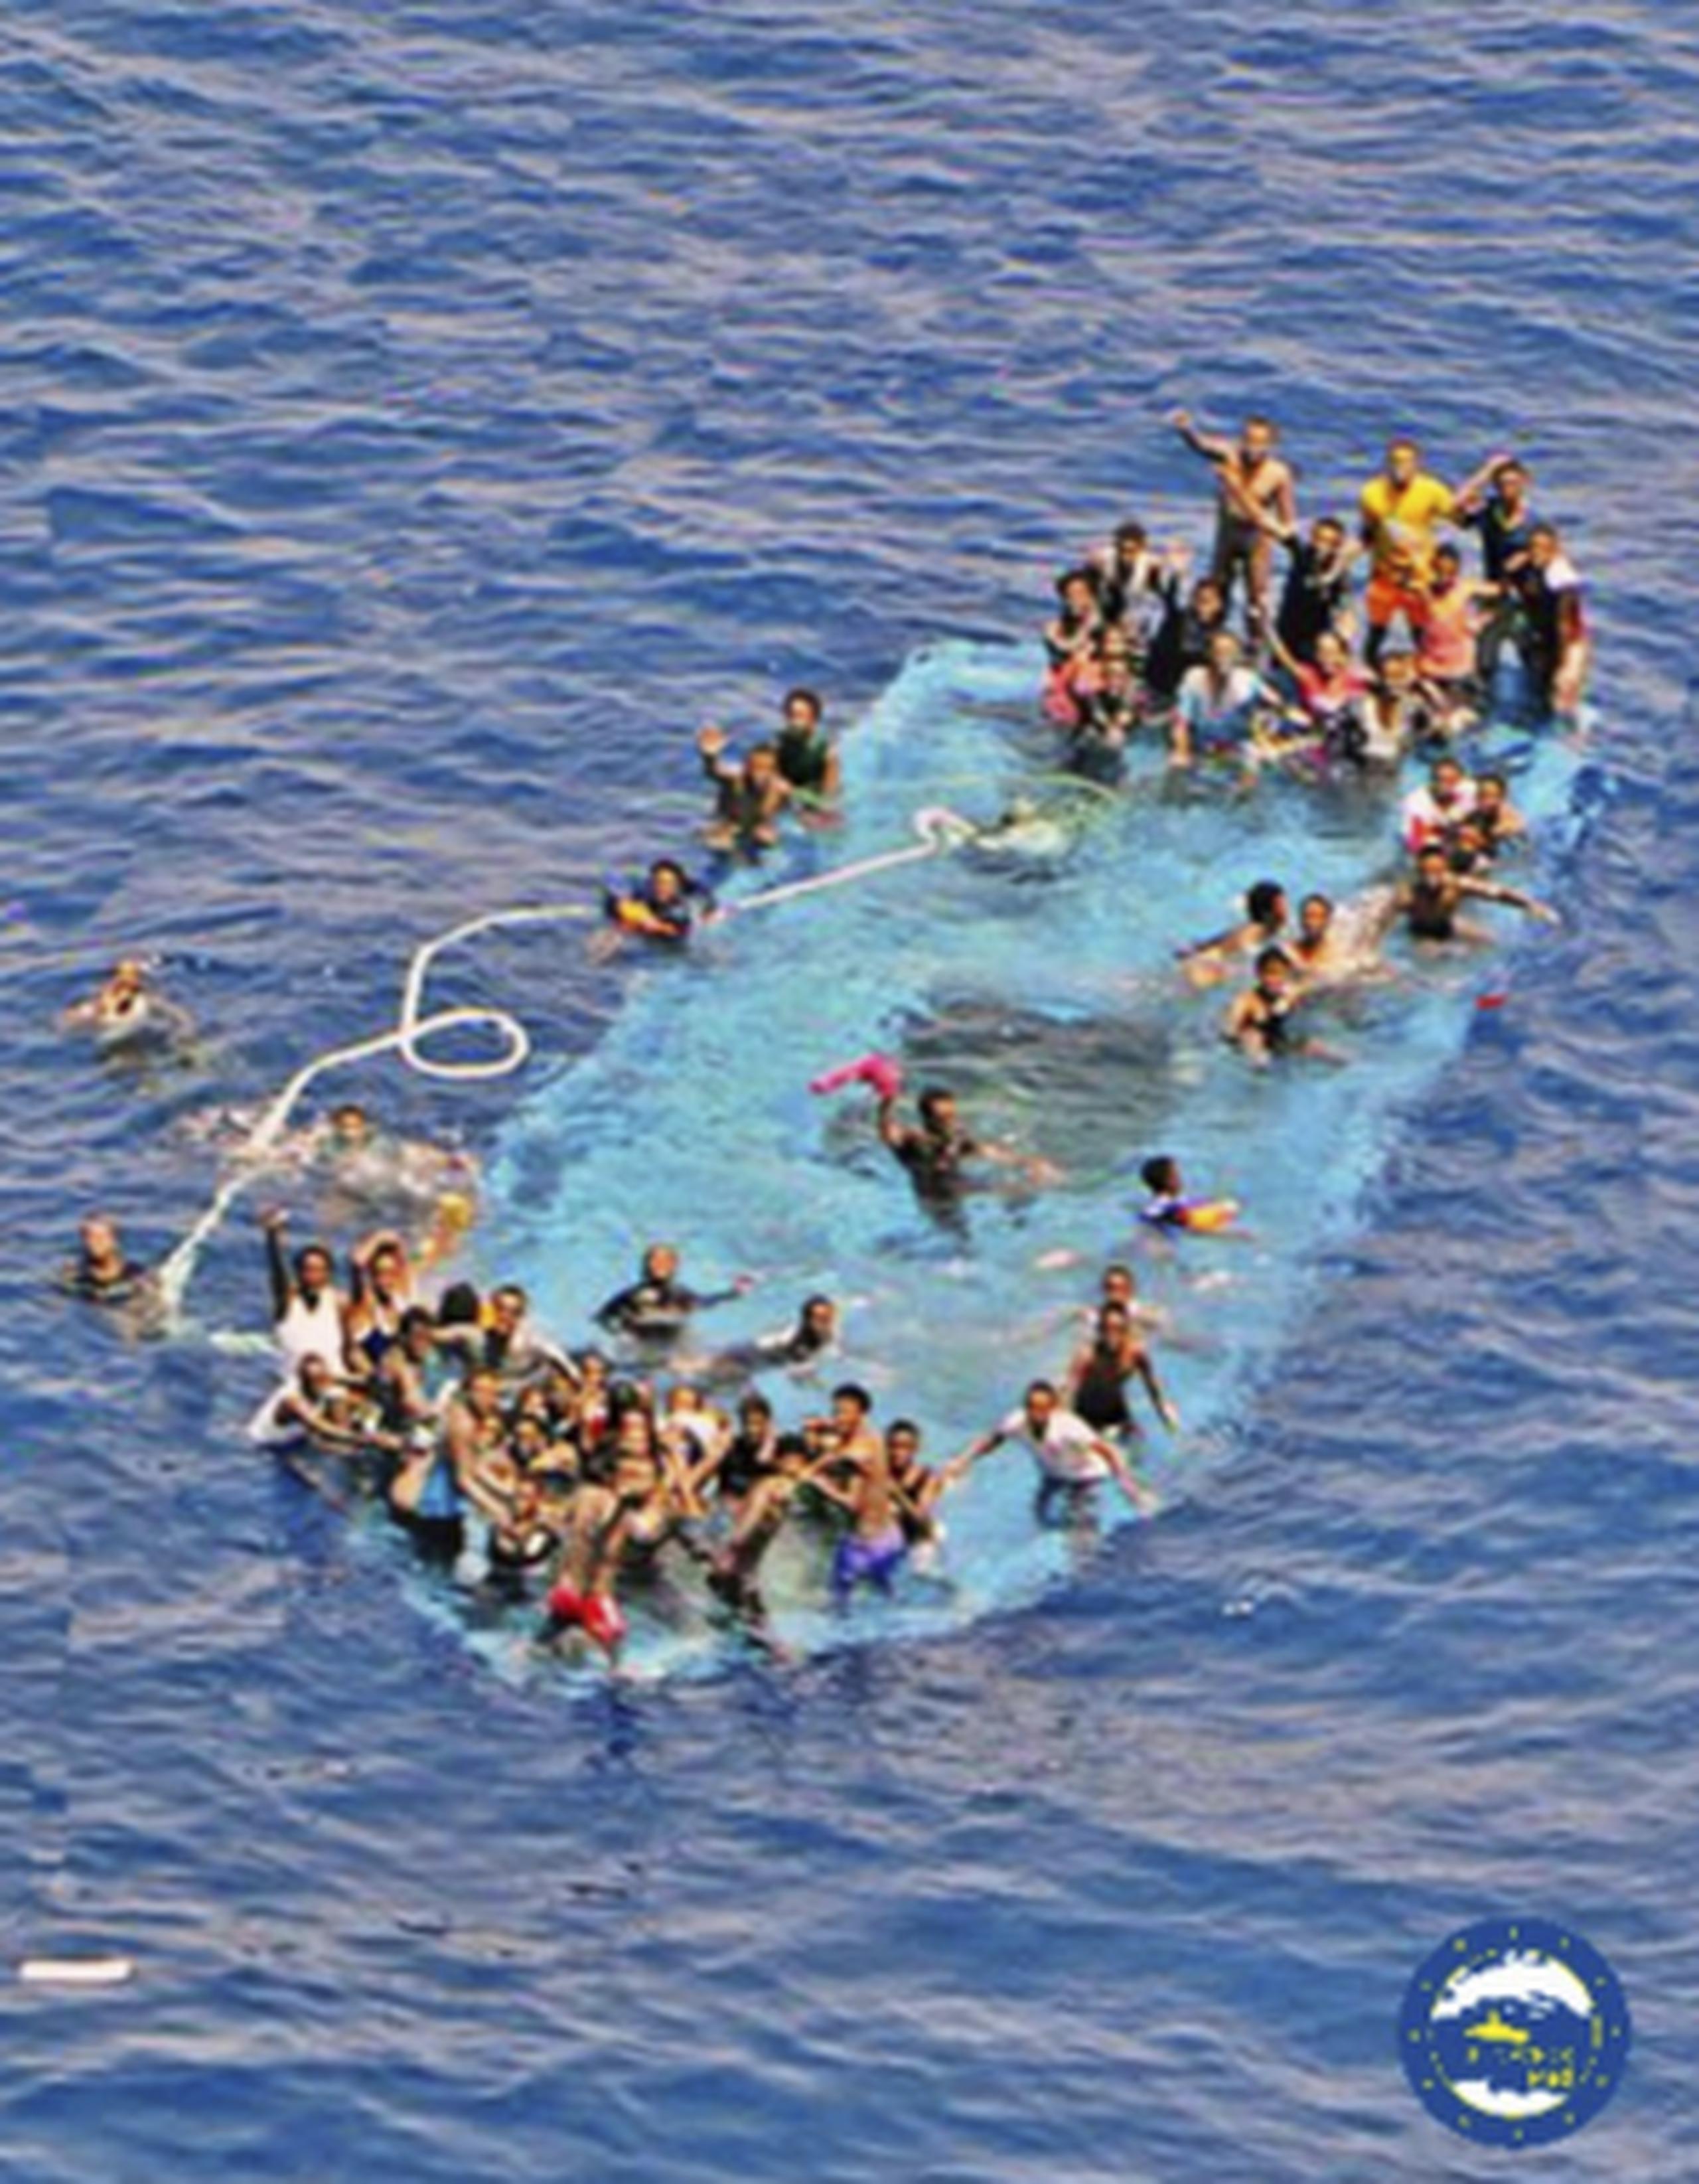 Migrantes piden ayuda al ver que su embarcación se hunde en aguas del Mediterráneo en uno de los recientes incidentes que terminó con varios muertos. (EUNAVFORMED via AP)